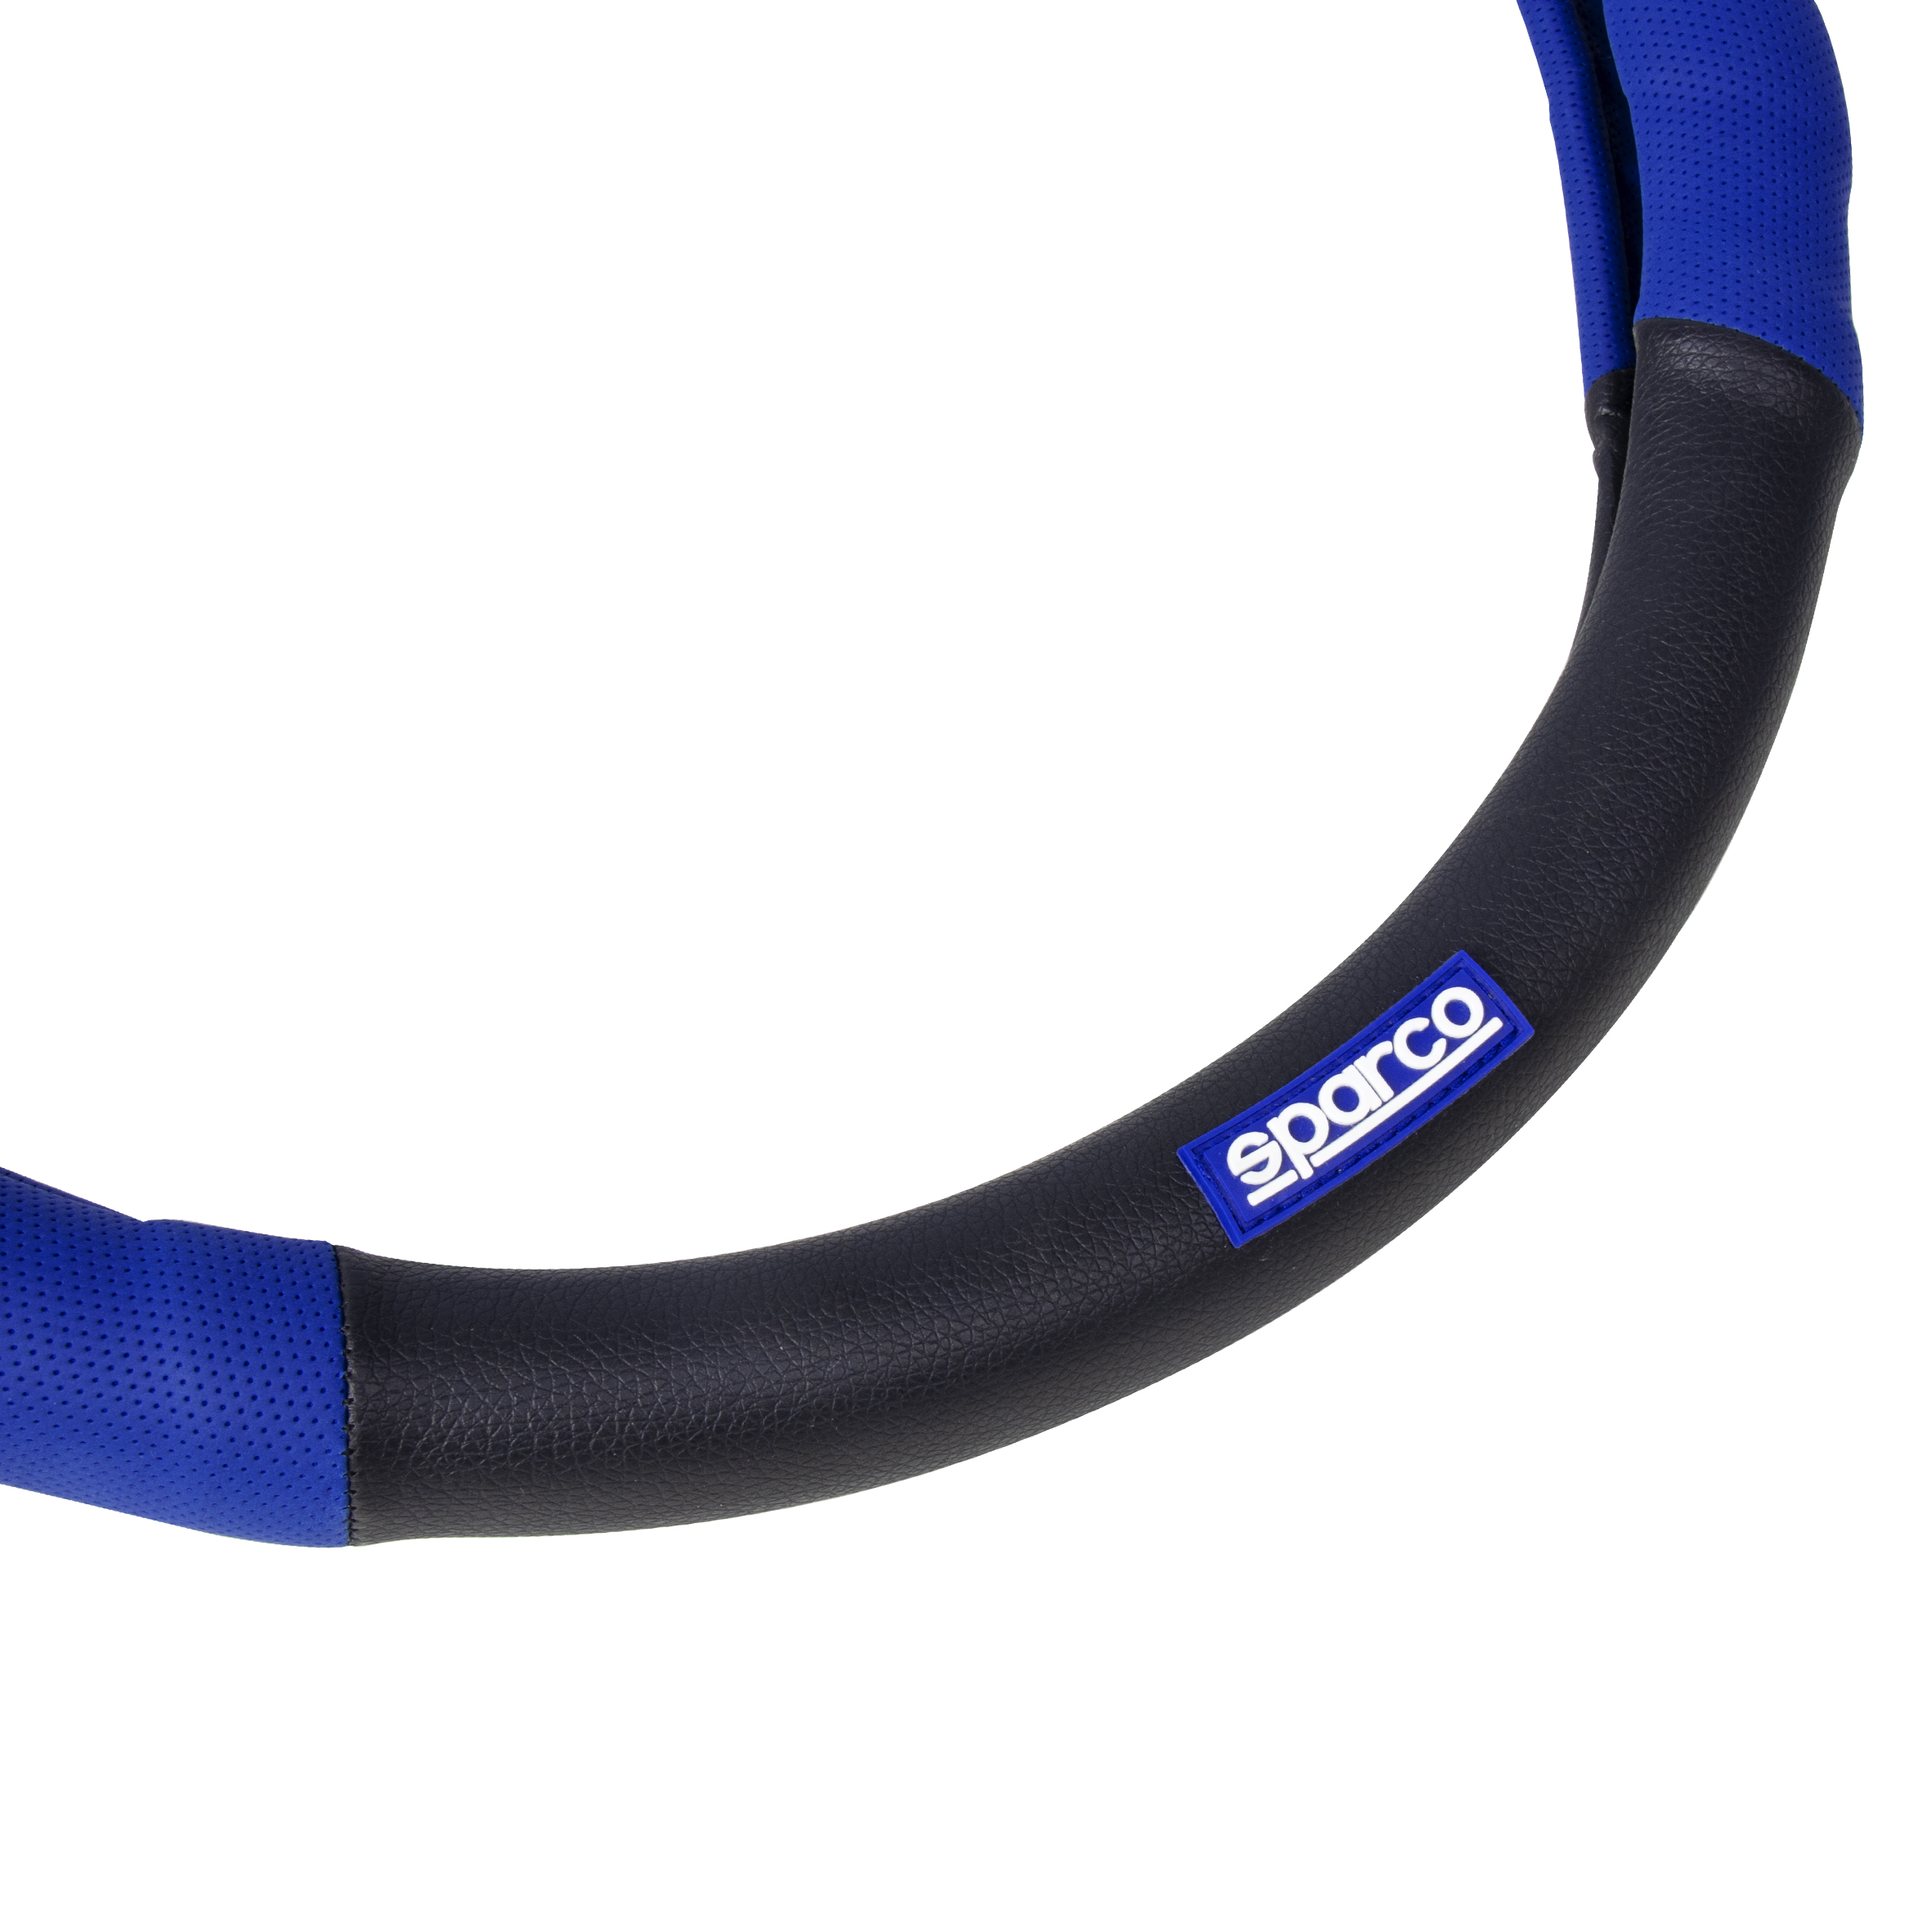 SPC1100L SPARCO STEERING WHEEL COVER Lenkradbezug Blau, schwarz, Ø: 37, 38cm,  PU (Polyurethan) SPC1100L ❱❱❱ Preis und Erfahrungen